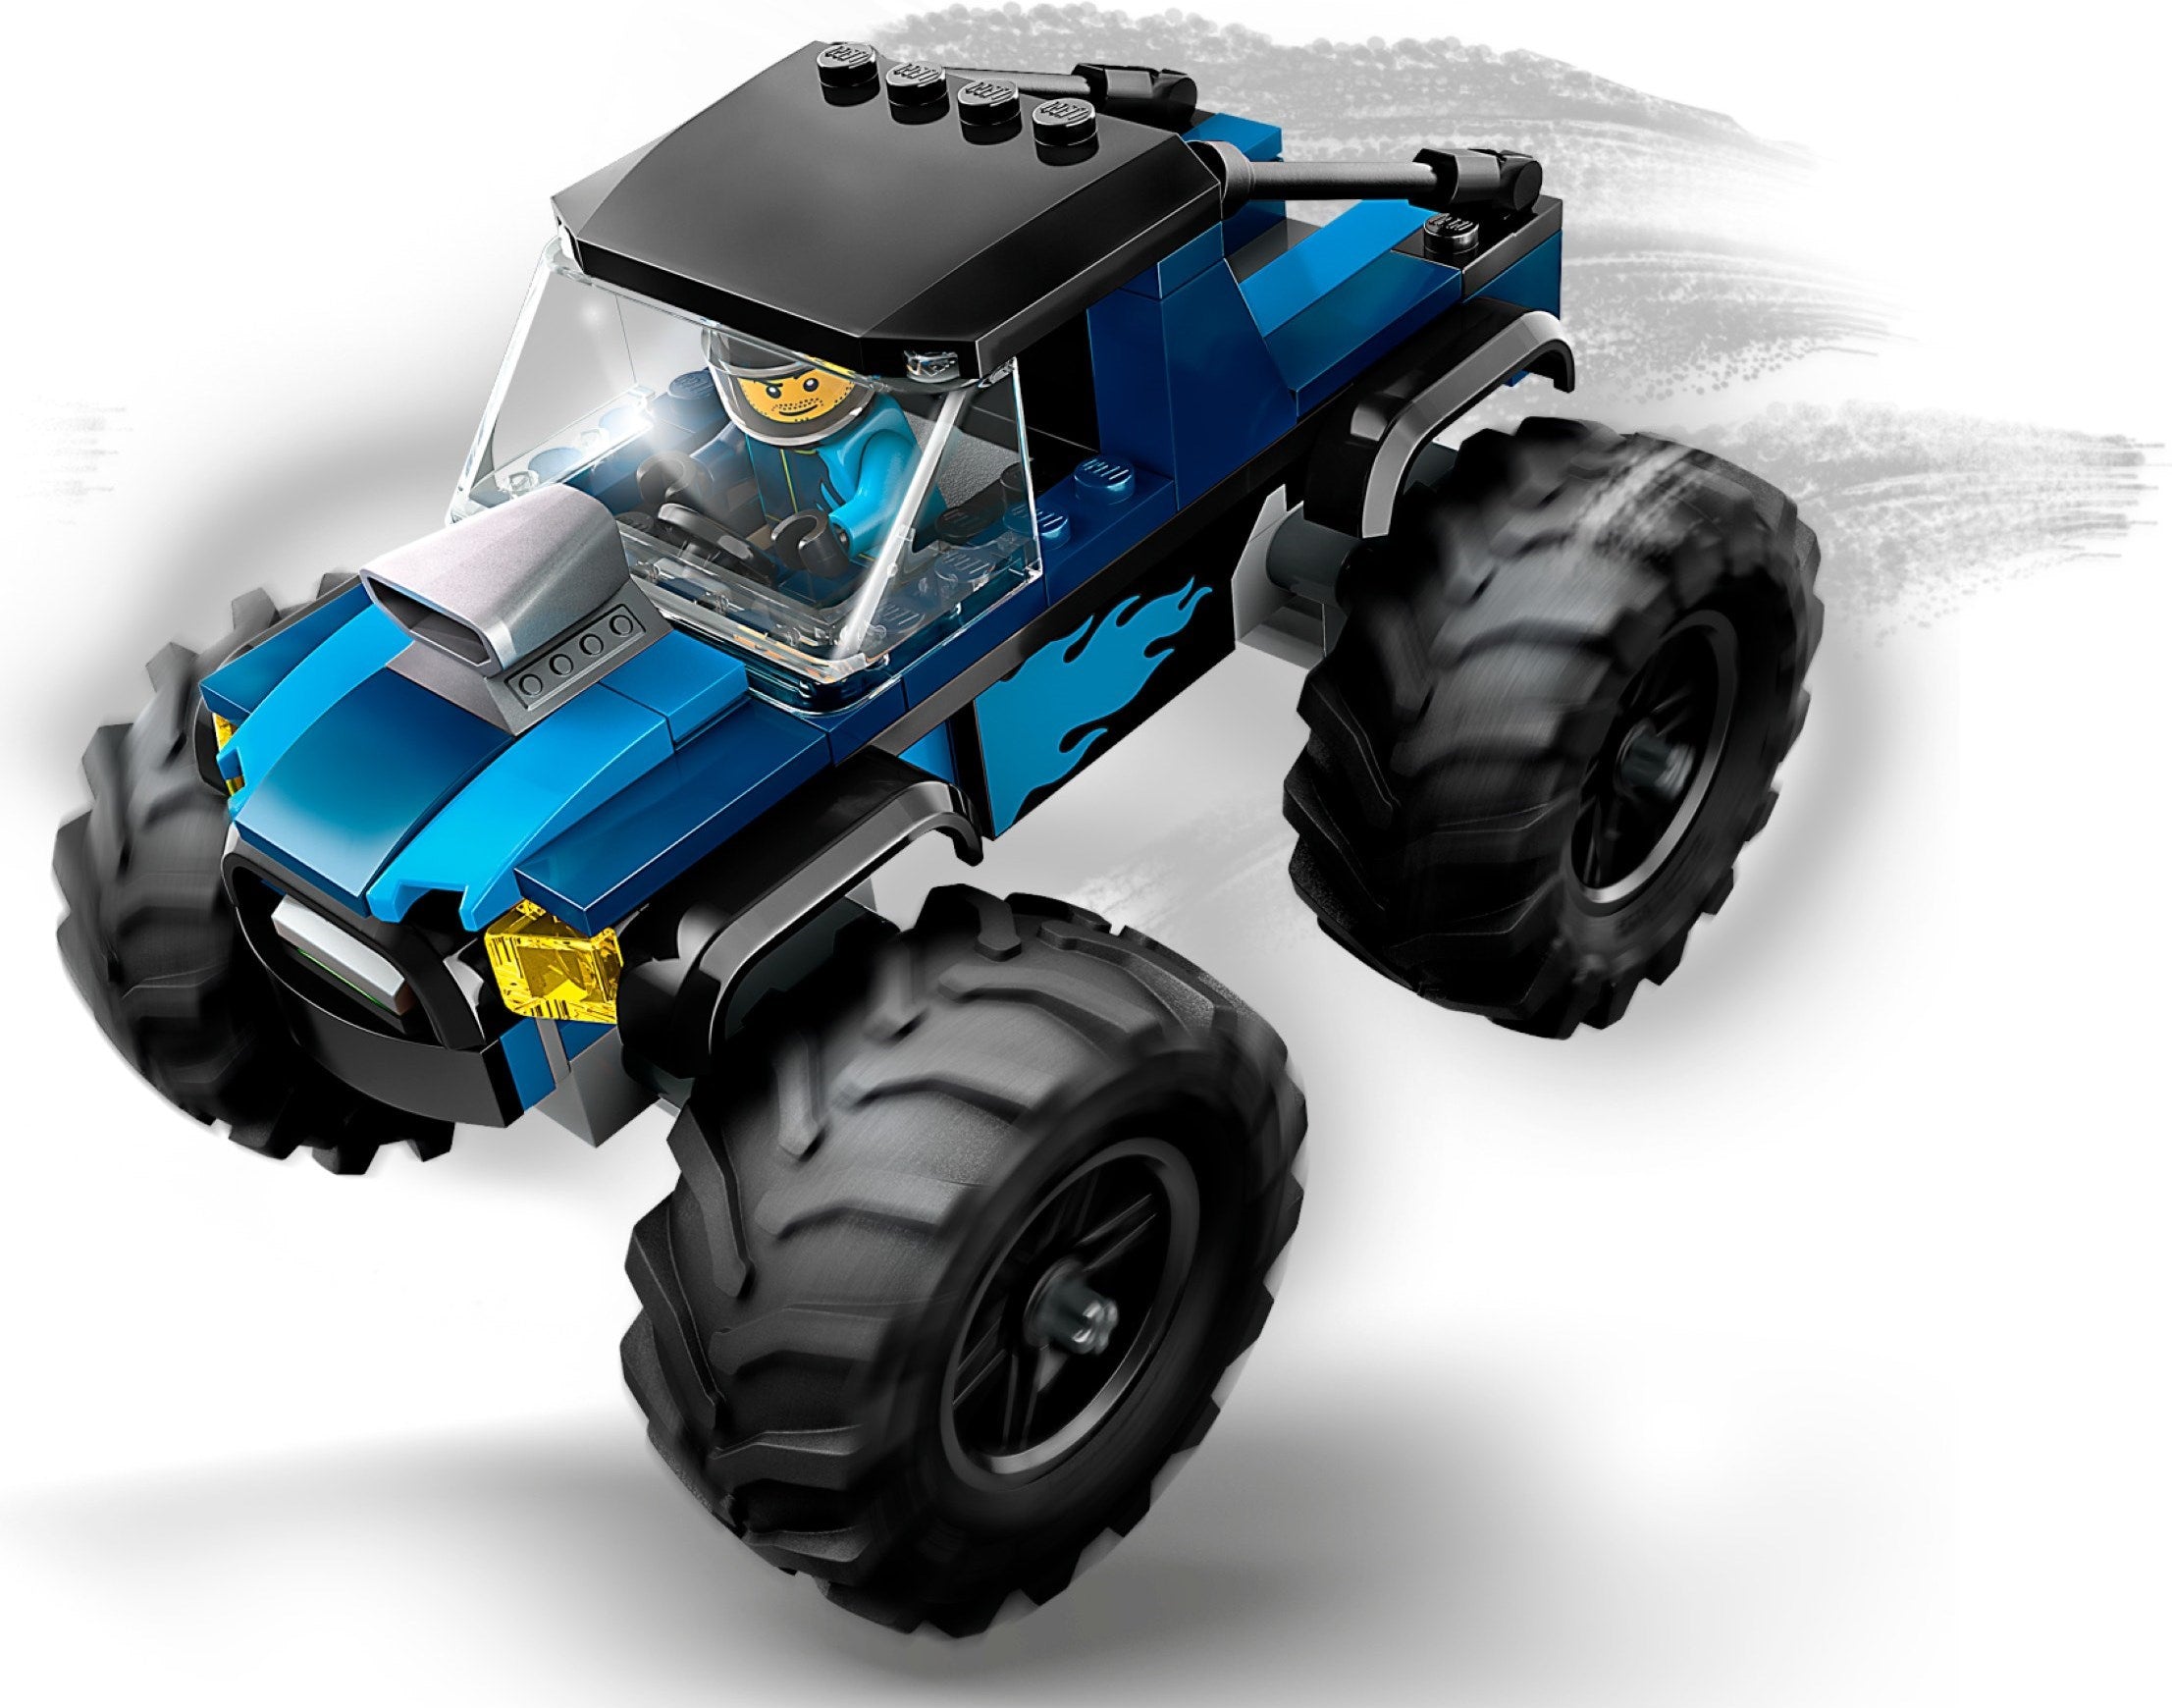 LEGO 60402 Monster Truck